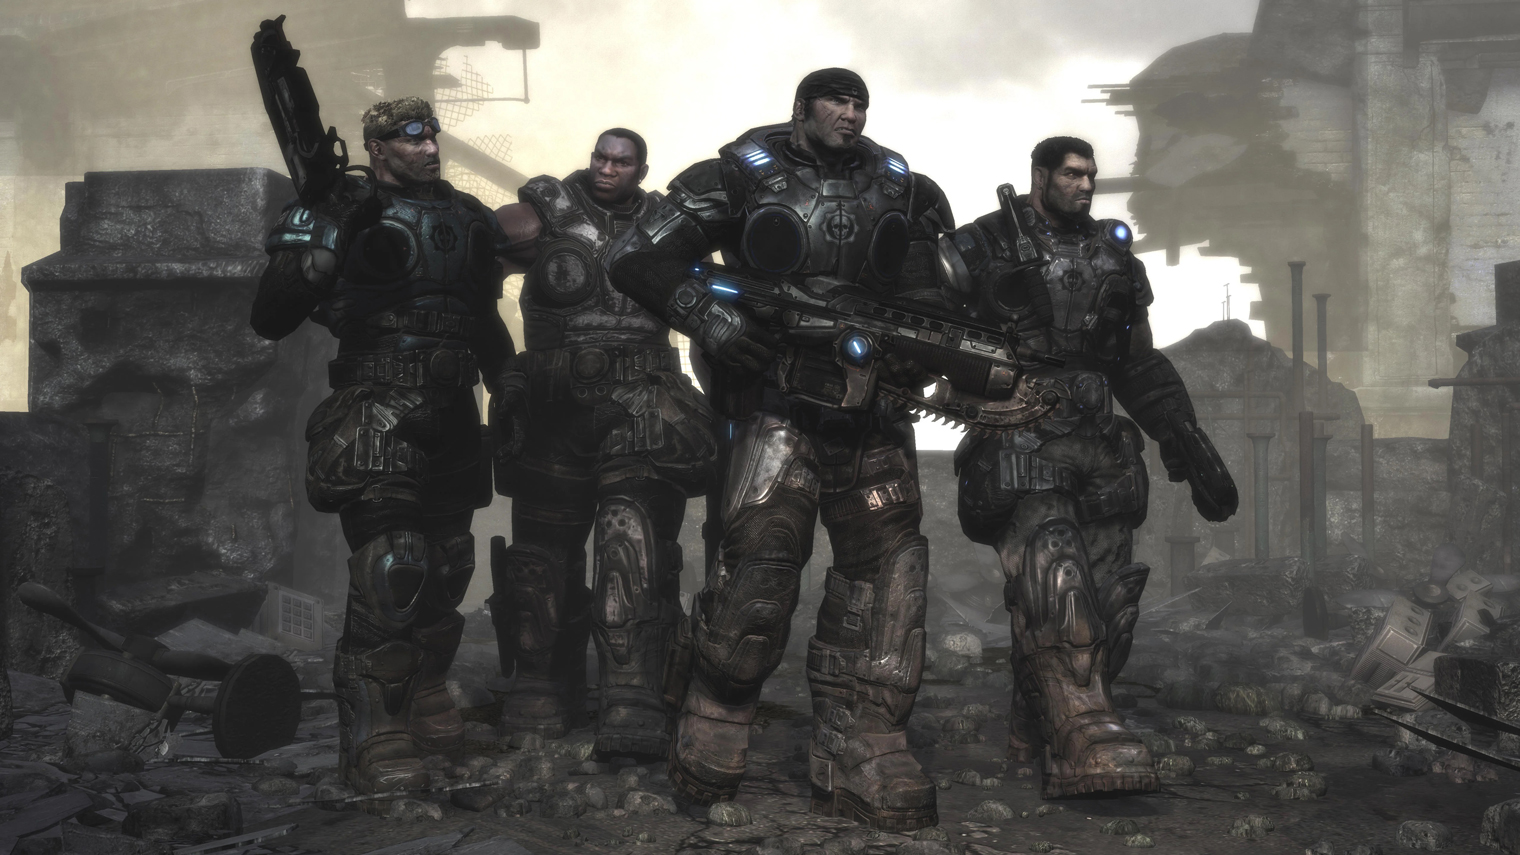 Вот они, слева направо: Деймон Бэрд, Августус Коул, Маркус Феникс, Доминик Сантьяго. Кадр: Xbox Game Studios